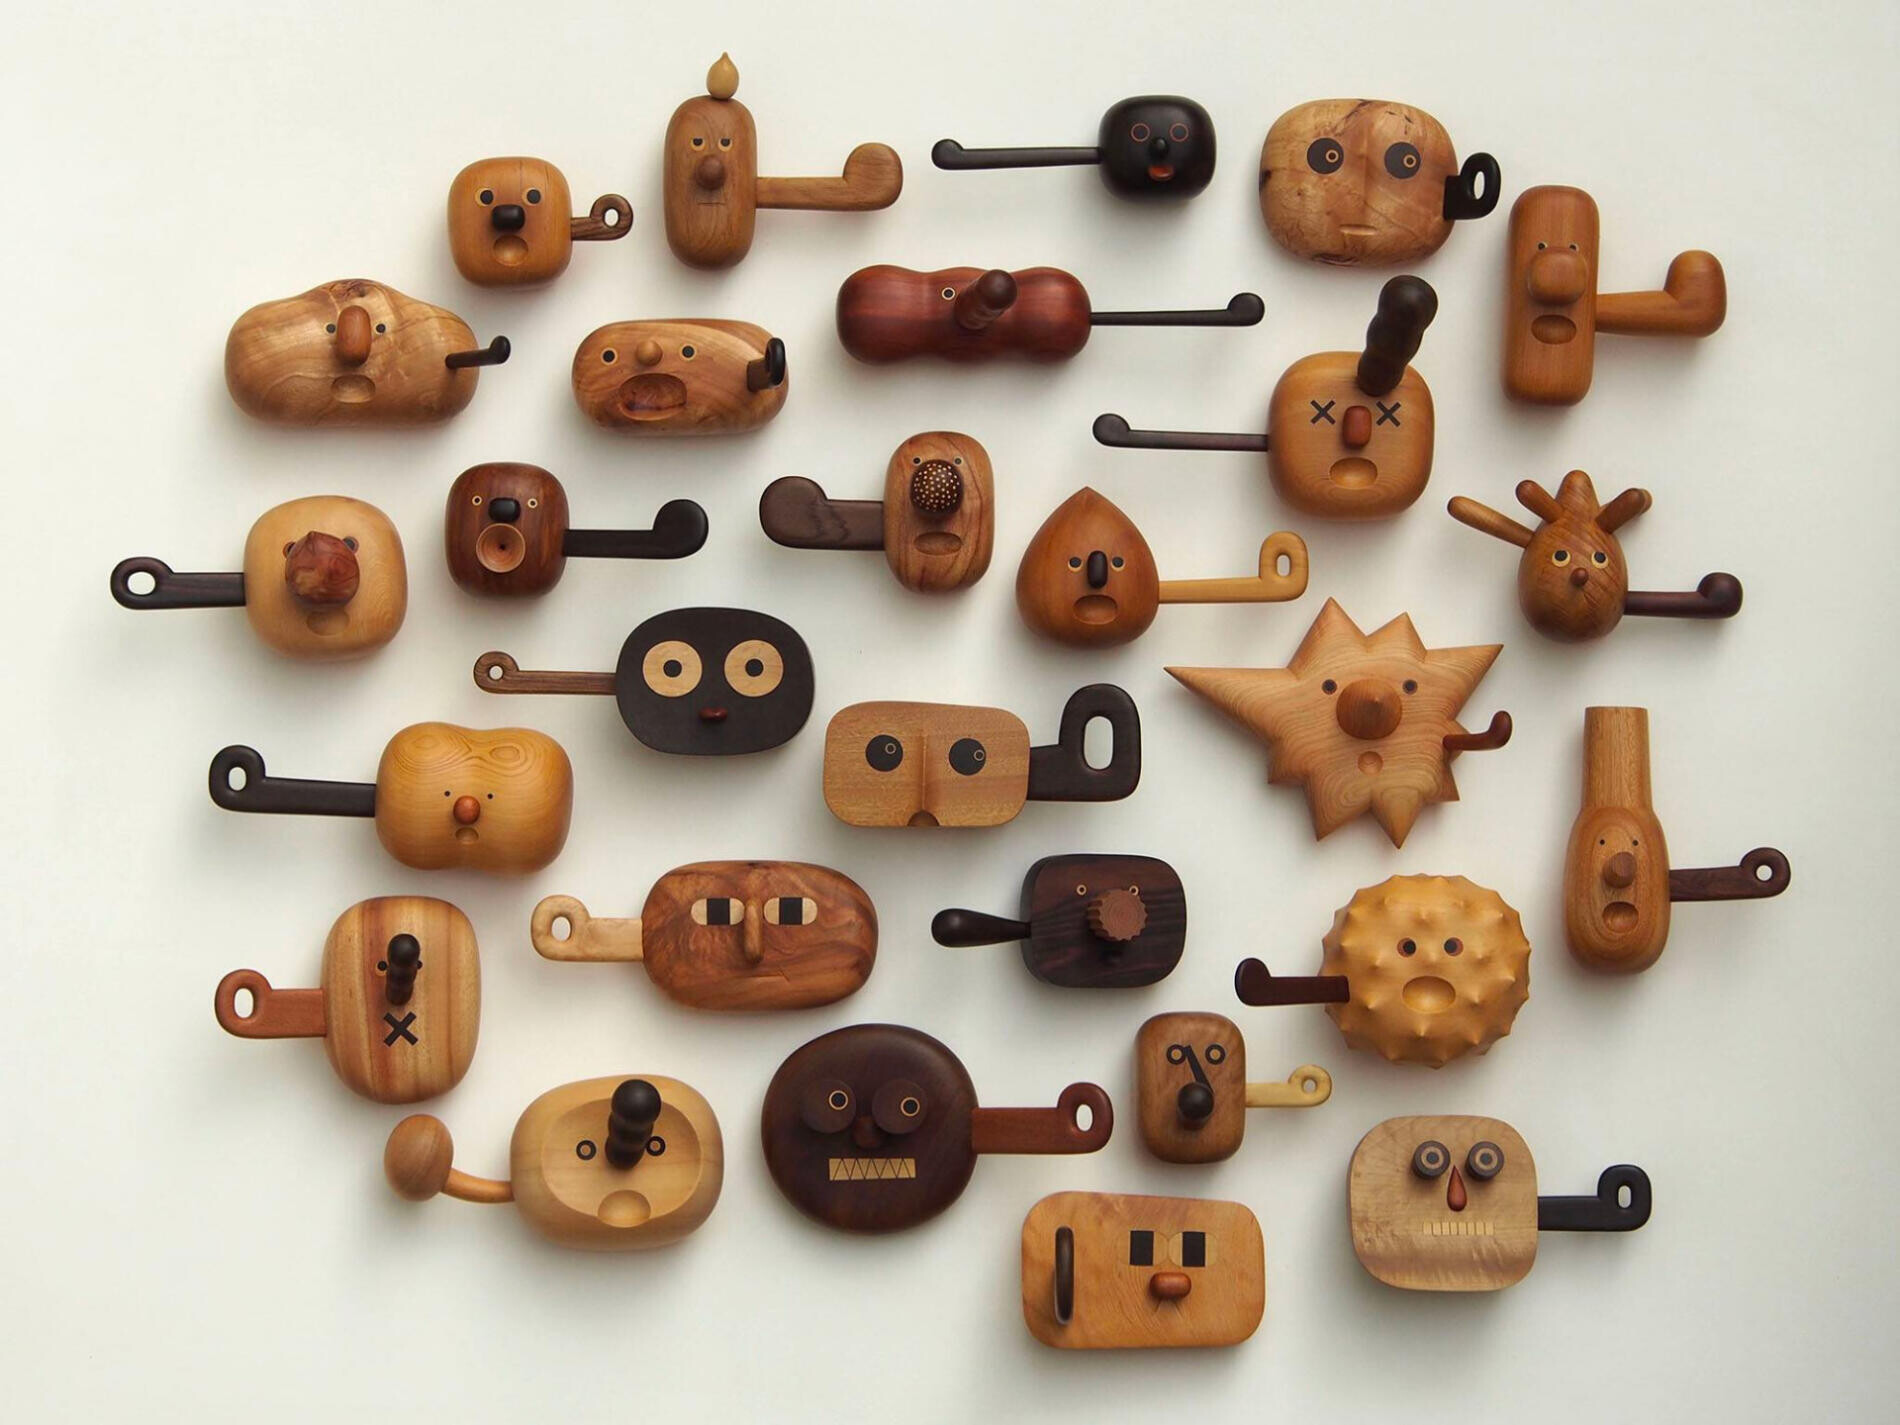 yen jui lin juguetes madera caras animados adorables 3